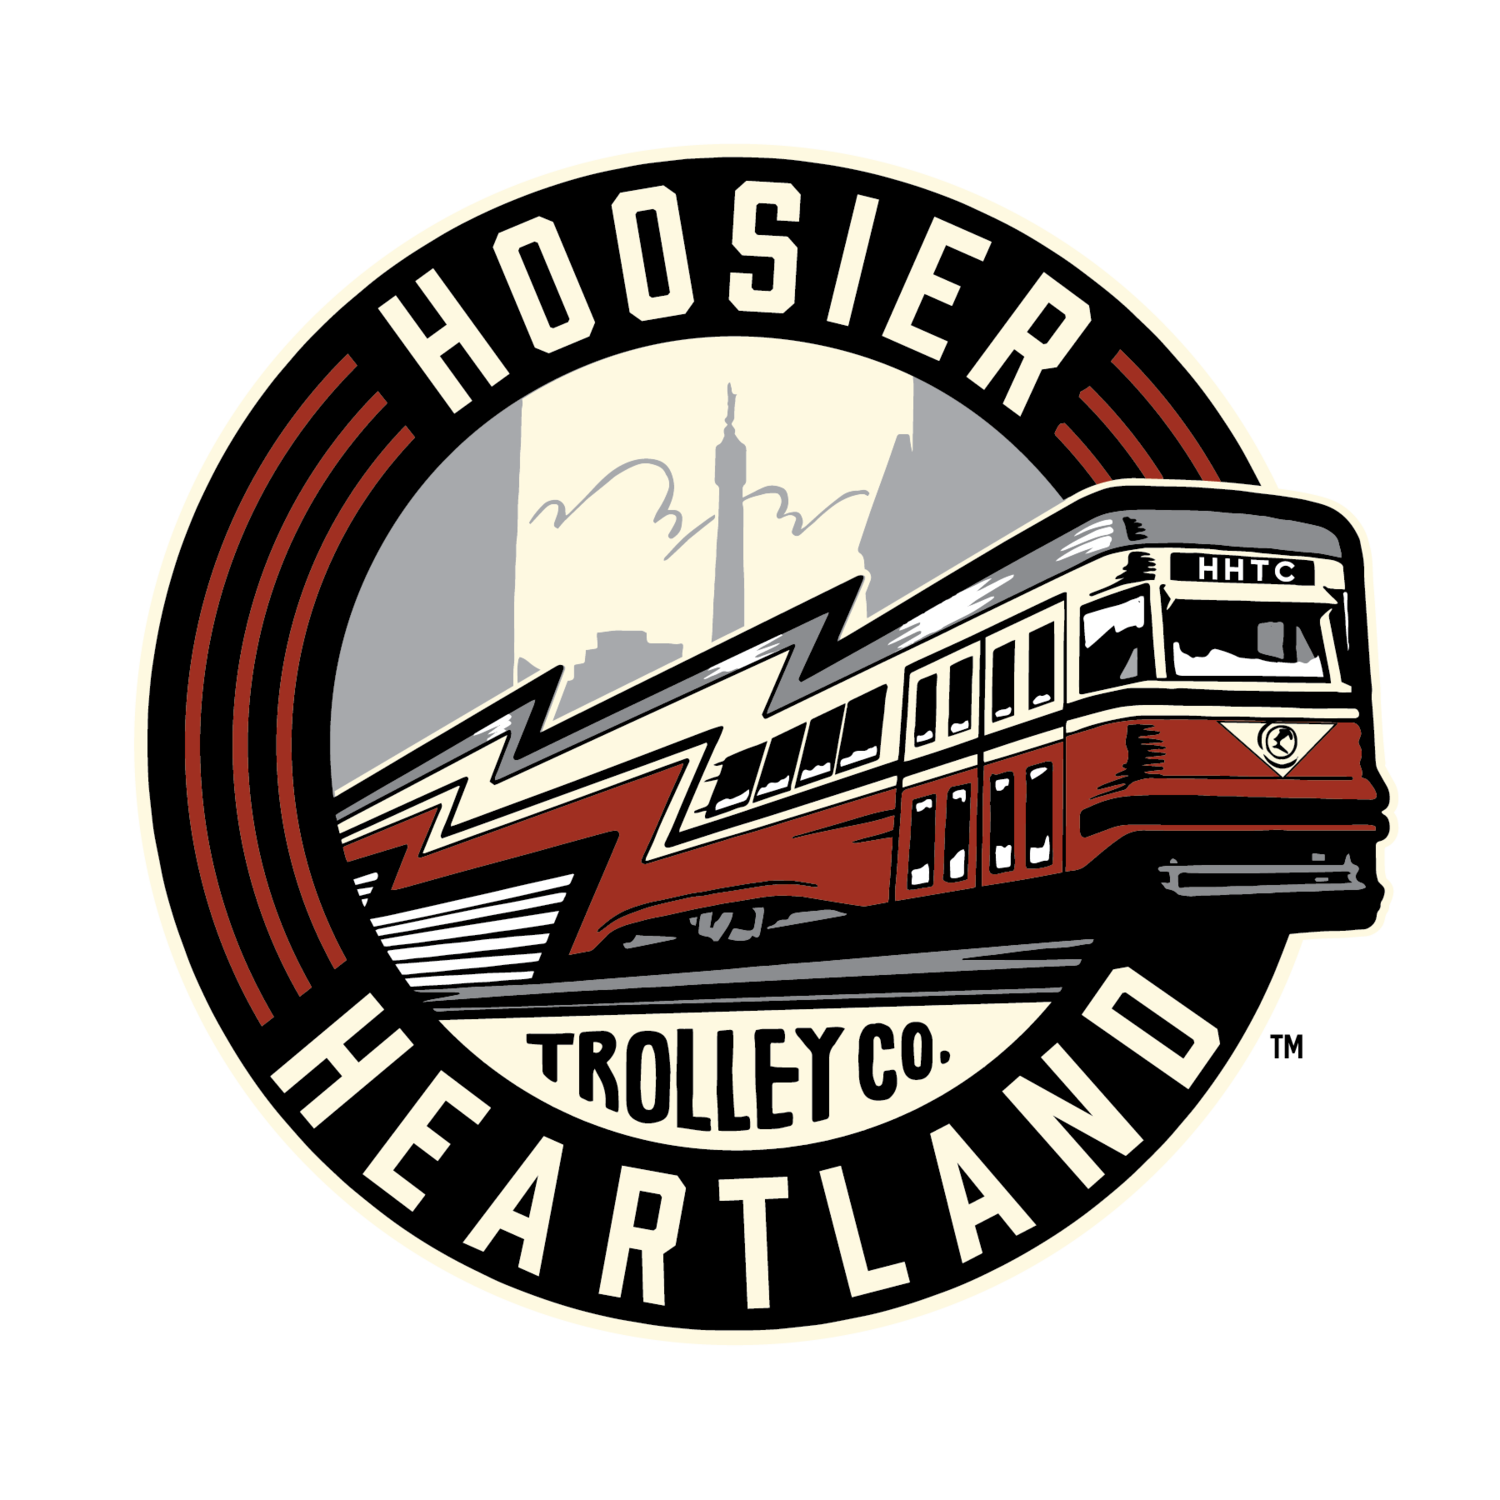 Hoosier Heartland Trolley Co.